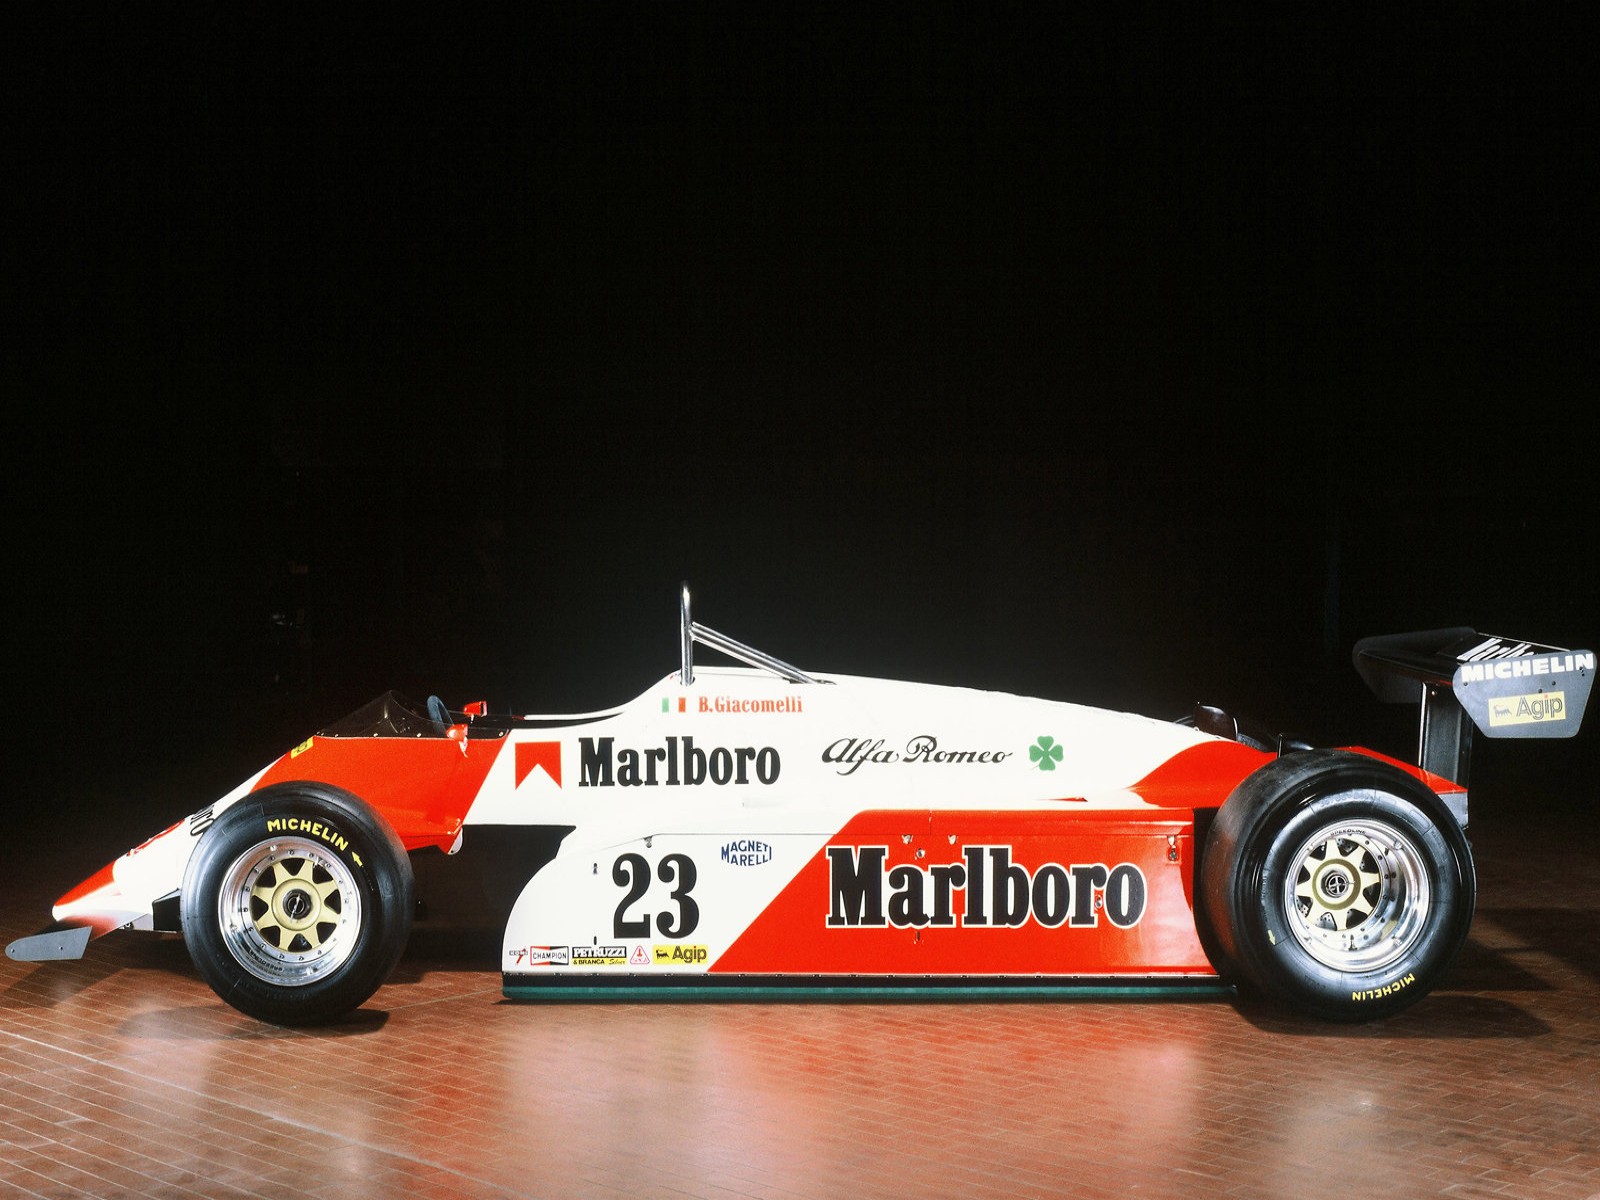 http://2.bp.blogspot.com/-VXT7zR-8L1o/Tc_Gke8F2xI/AAAAAAAAAMs/LrhShbr6bds/s1600/1982+Alfa+Romeo+182+T+Formula+1+-+Car+Photo+Wallpaper.jpg